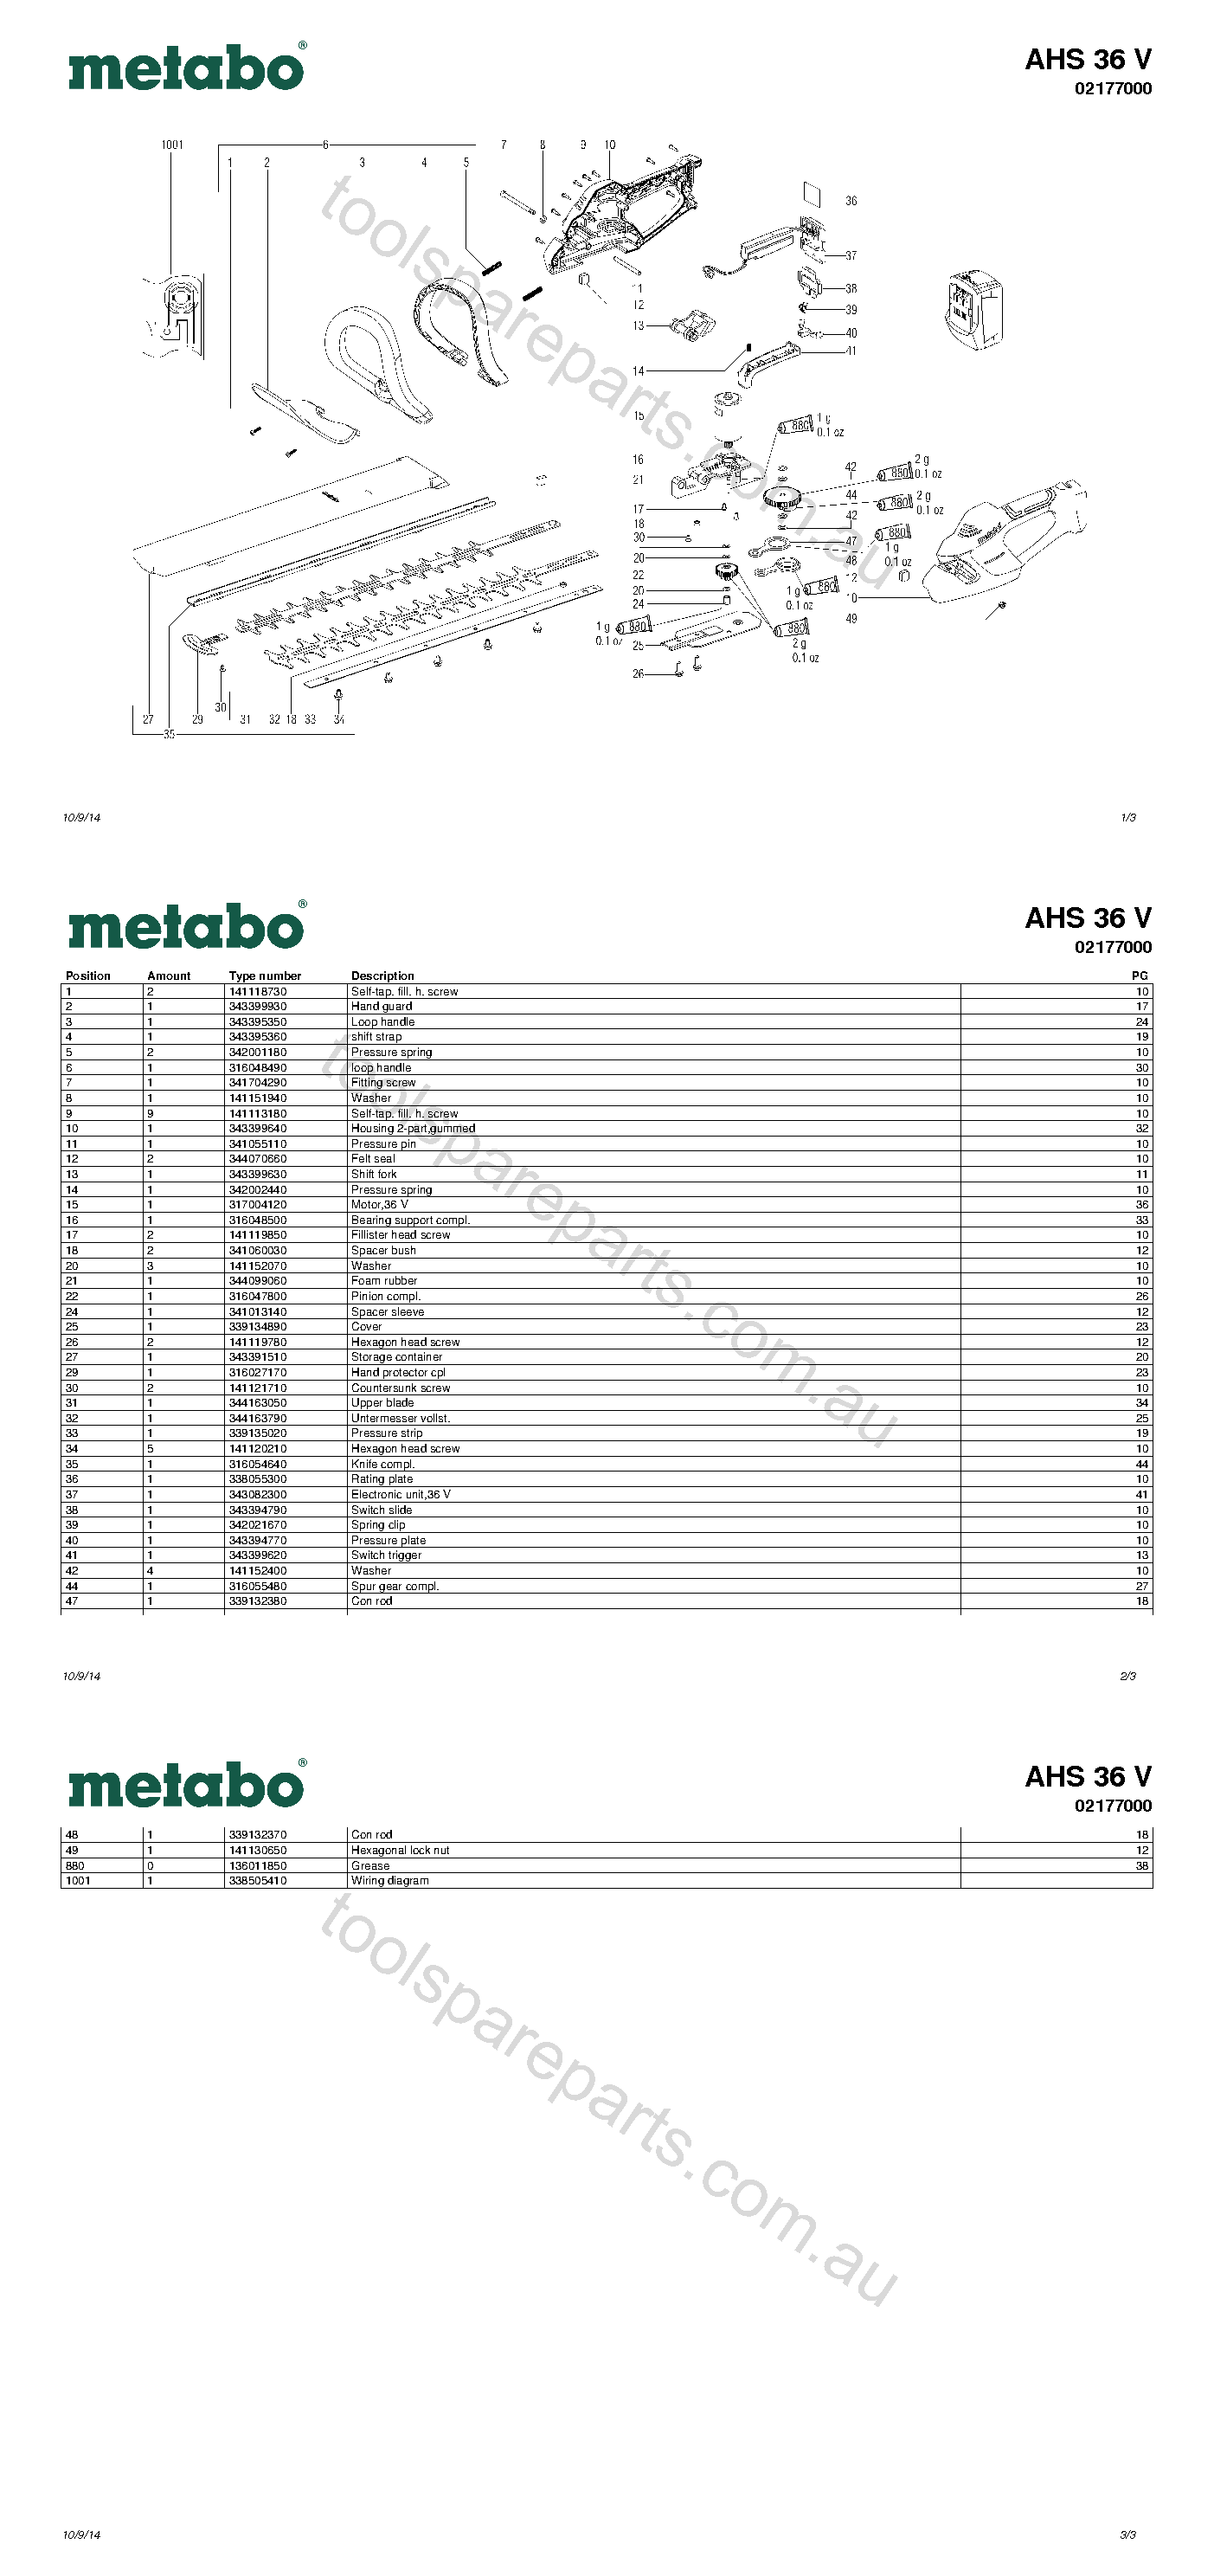 Metabo AHS 36 V 02177000  Diagram 1